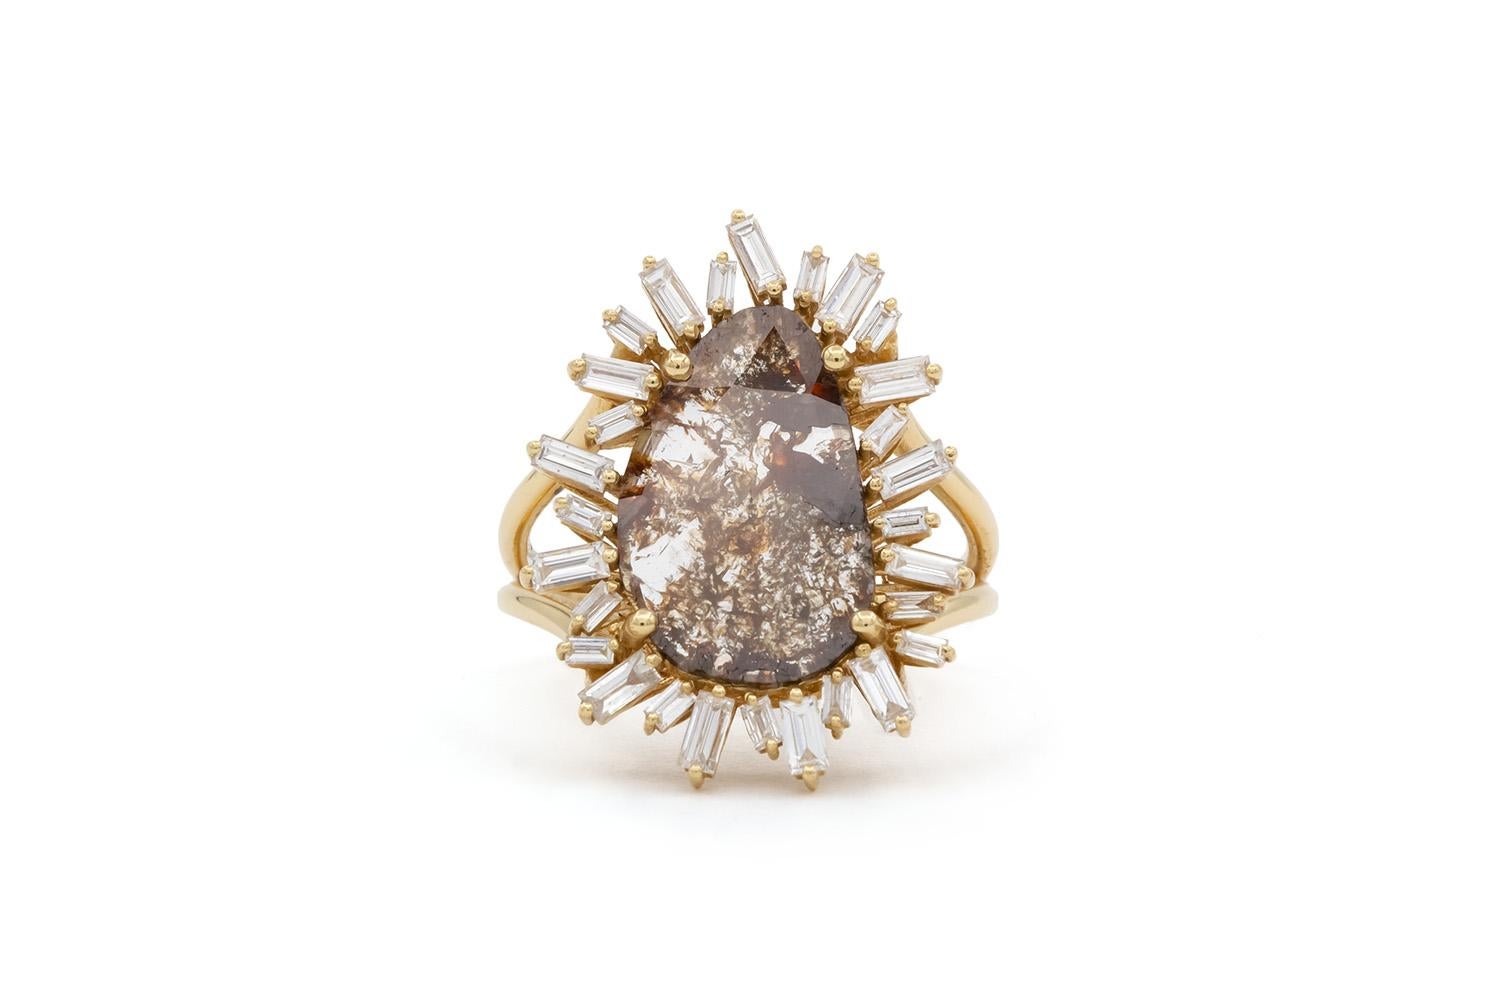 Wir freuen uns, diesen brandneuen ungetragenen Suzanne Kalan 18k Gelbgold Rose Cut Diamond Slice & Baguette Diamond Cocktail Fashion Ring anzubieten. Dieser atemberaubende Ring besteht aus einem natürlichen Diamanten von 1,67 Karat, der von